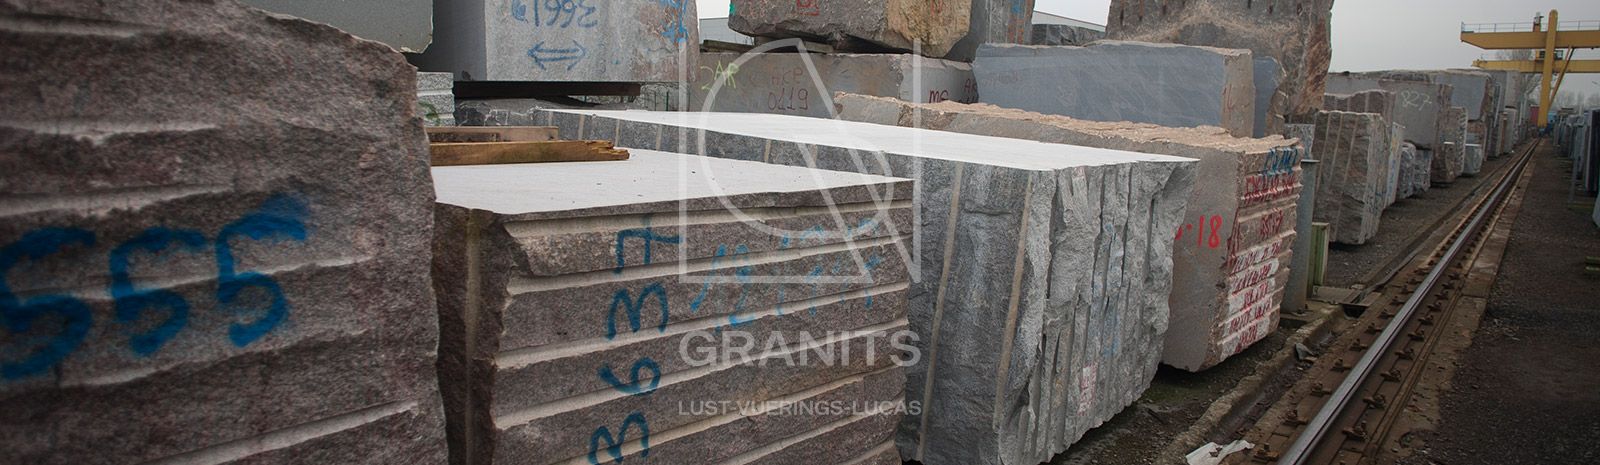 Granits Lust-Vuerings-Lucas - Granit Lust-Vuerings - Graniet